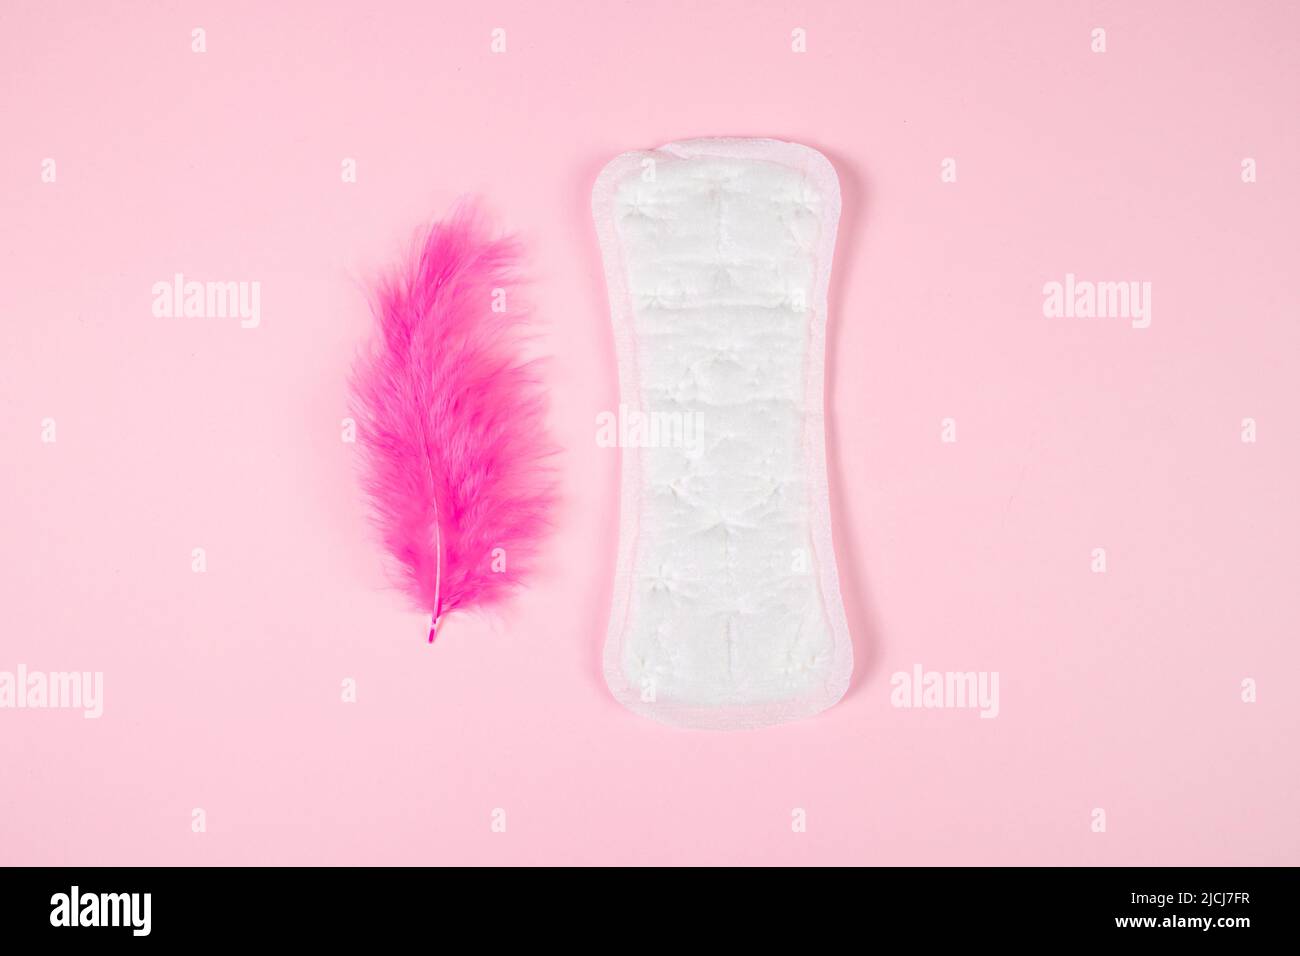 Almohadilla sanitaria y pluma rosa sobre fondo de color. Producto diario de higiene femenina. Menstruación y concepto de salud de la mujer. Foto de stock